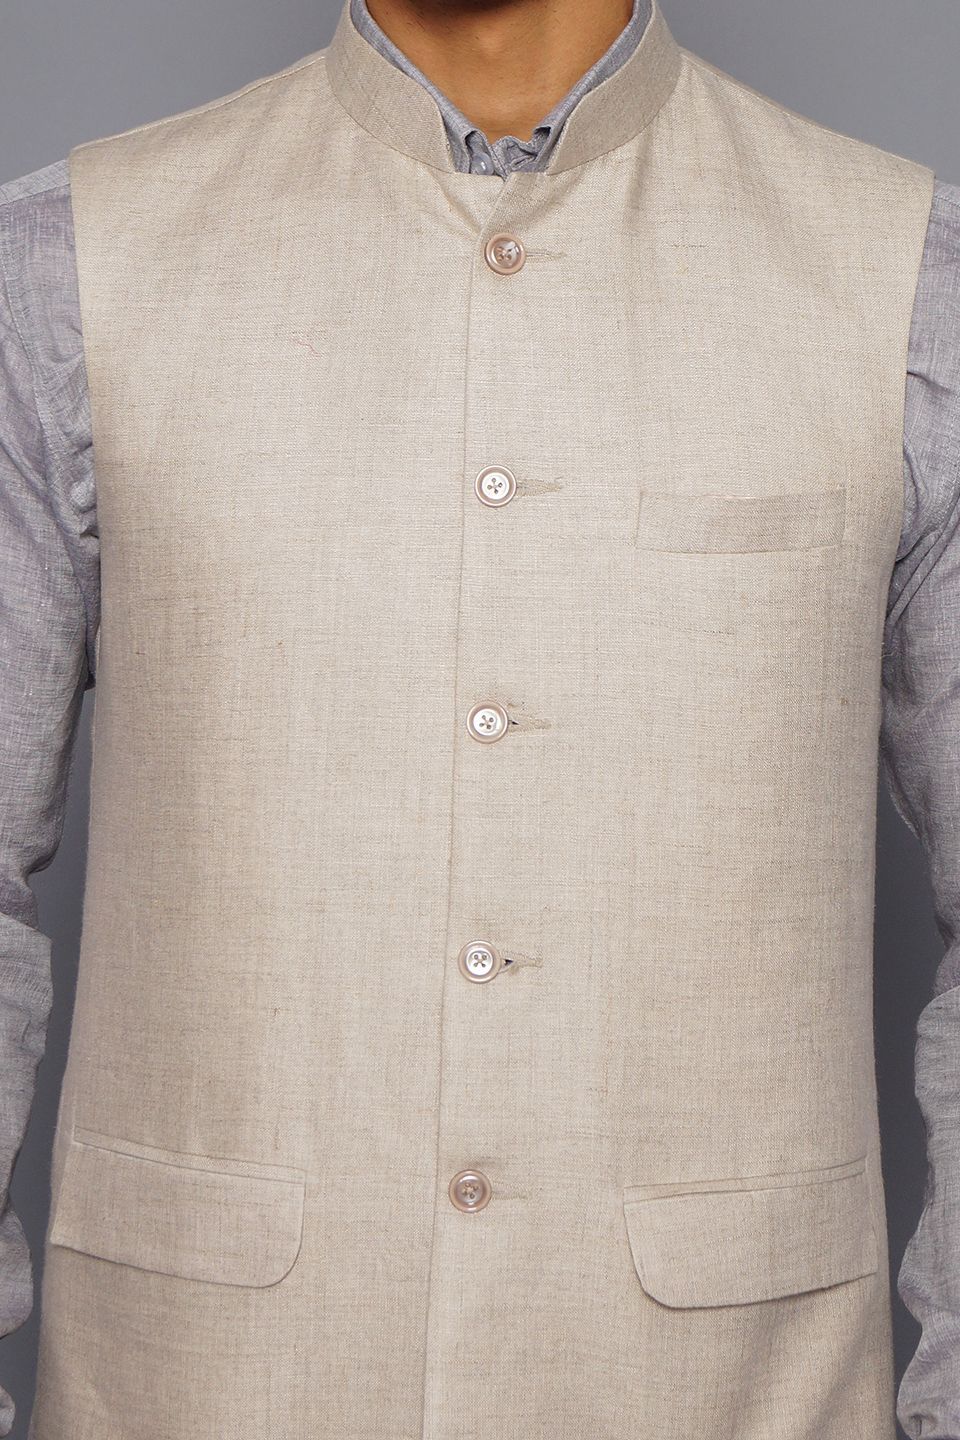 Wintage Men's Pure Linen Nehru Jacket Vest Waistcoat: Natural